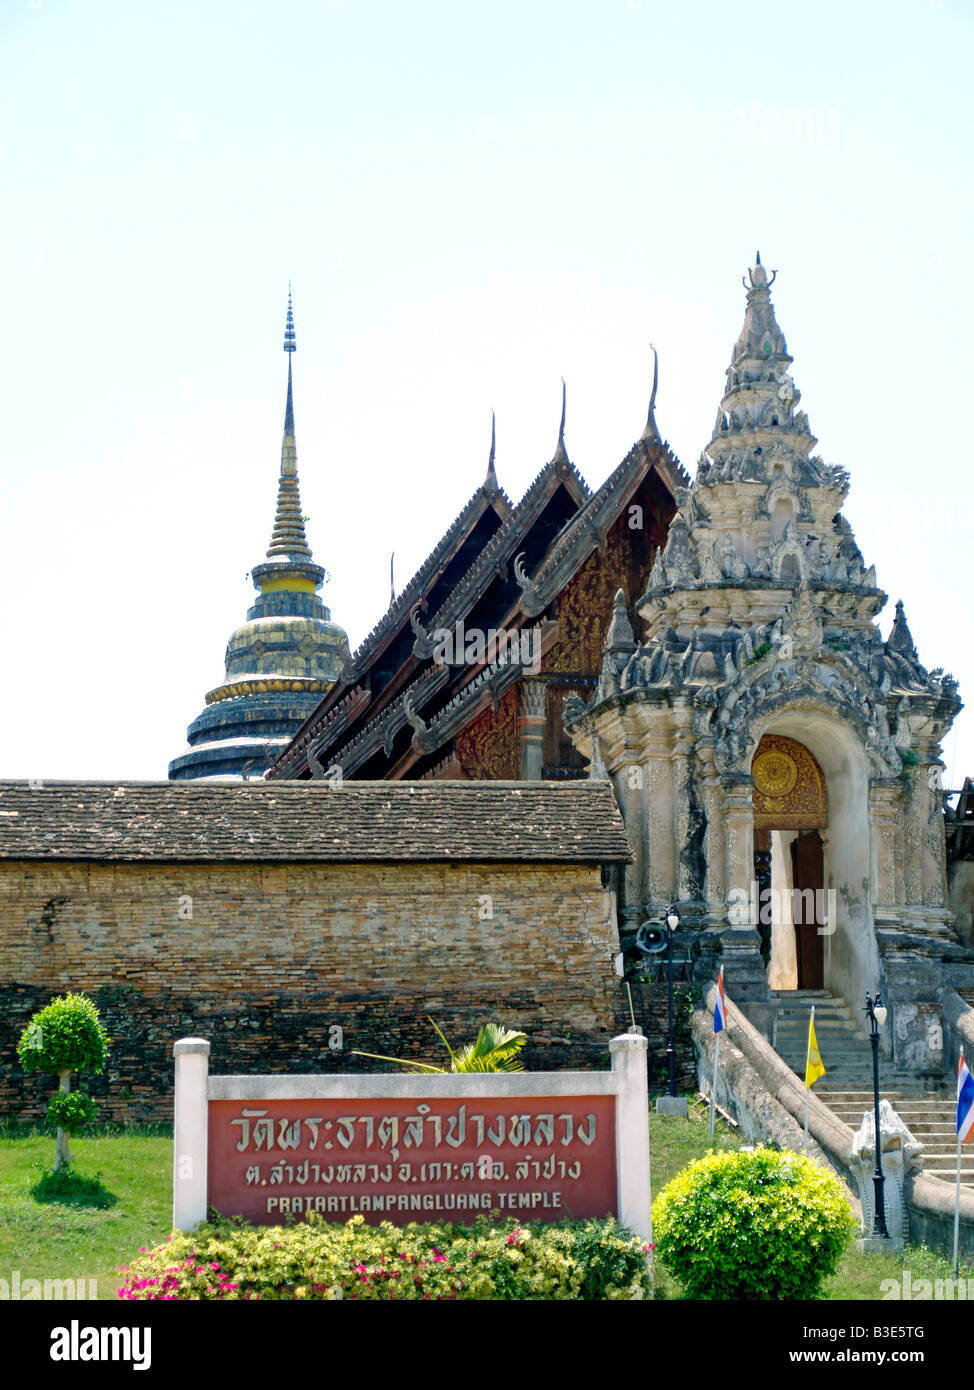 Thailand, Tempel Wat Pratart Lampang Luang Stock Photo